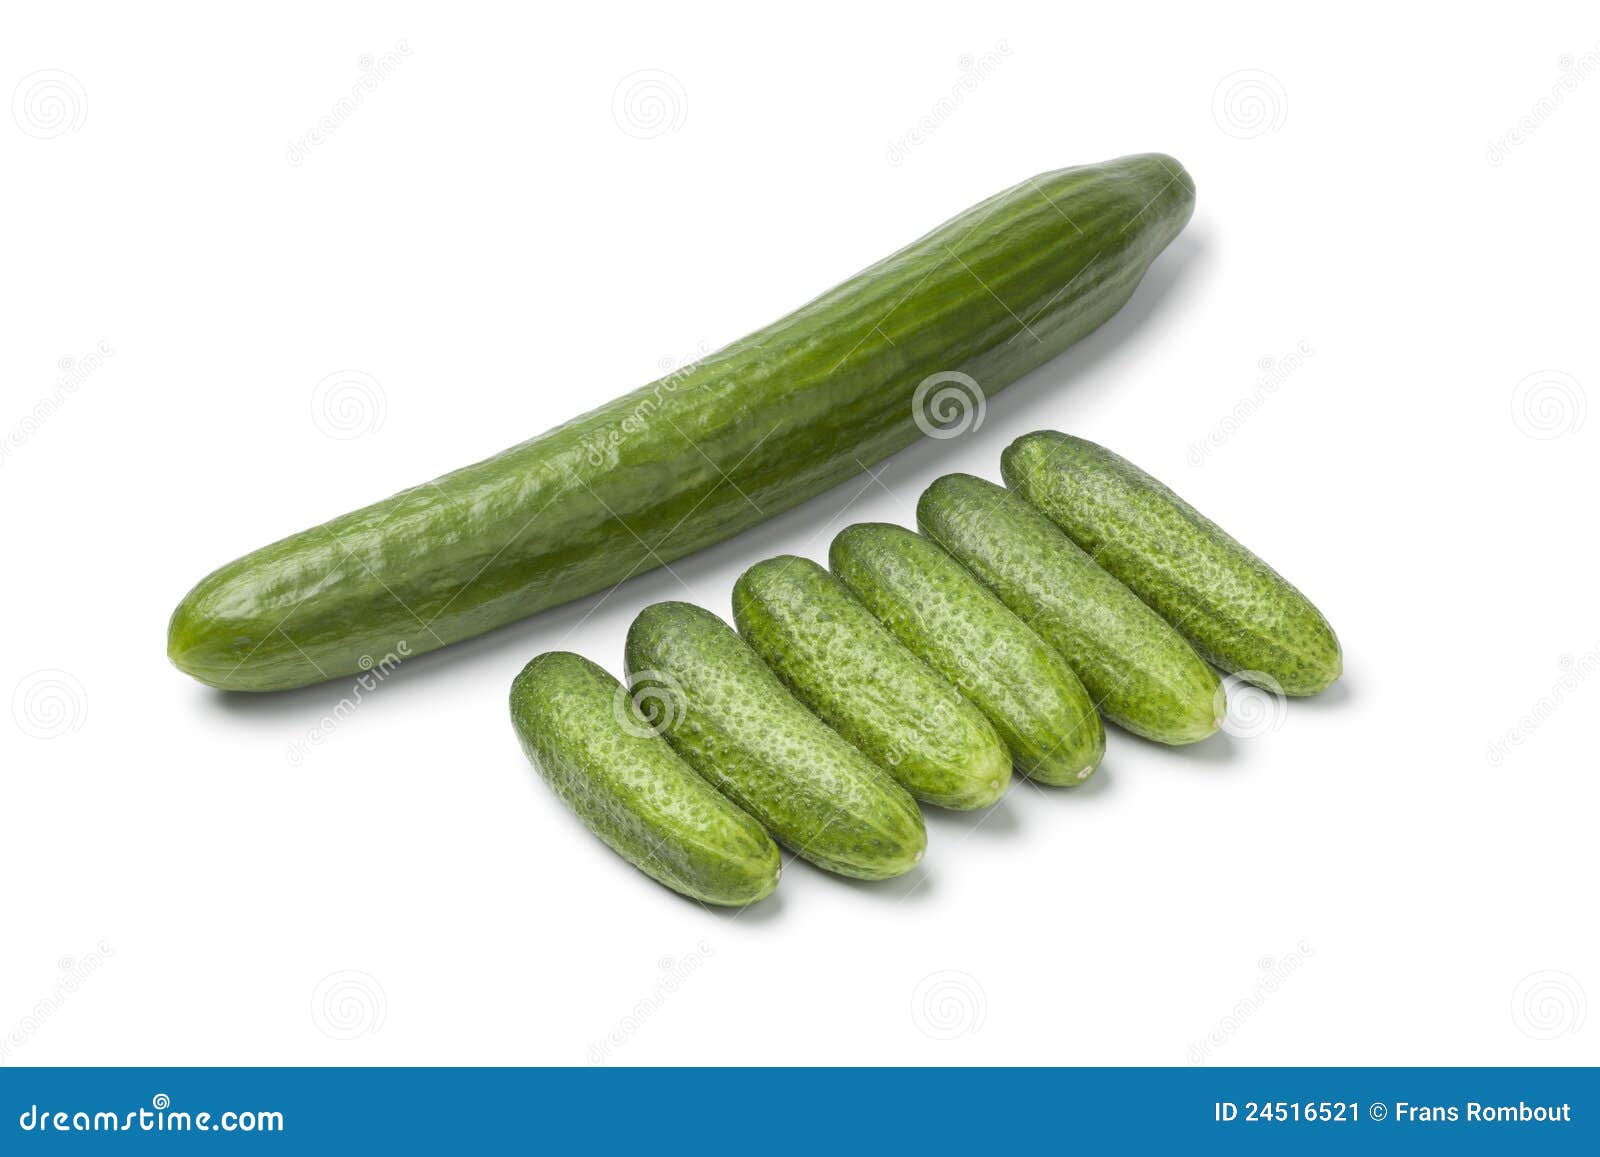 https://thumbs.dreamstime.com/z/fresh-mini-cucumbers-24516521.jpg